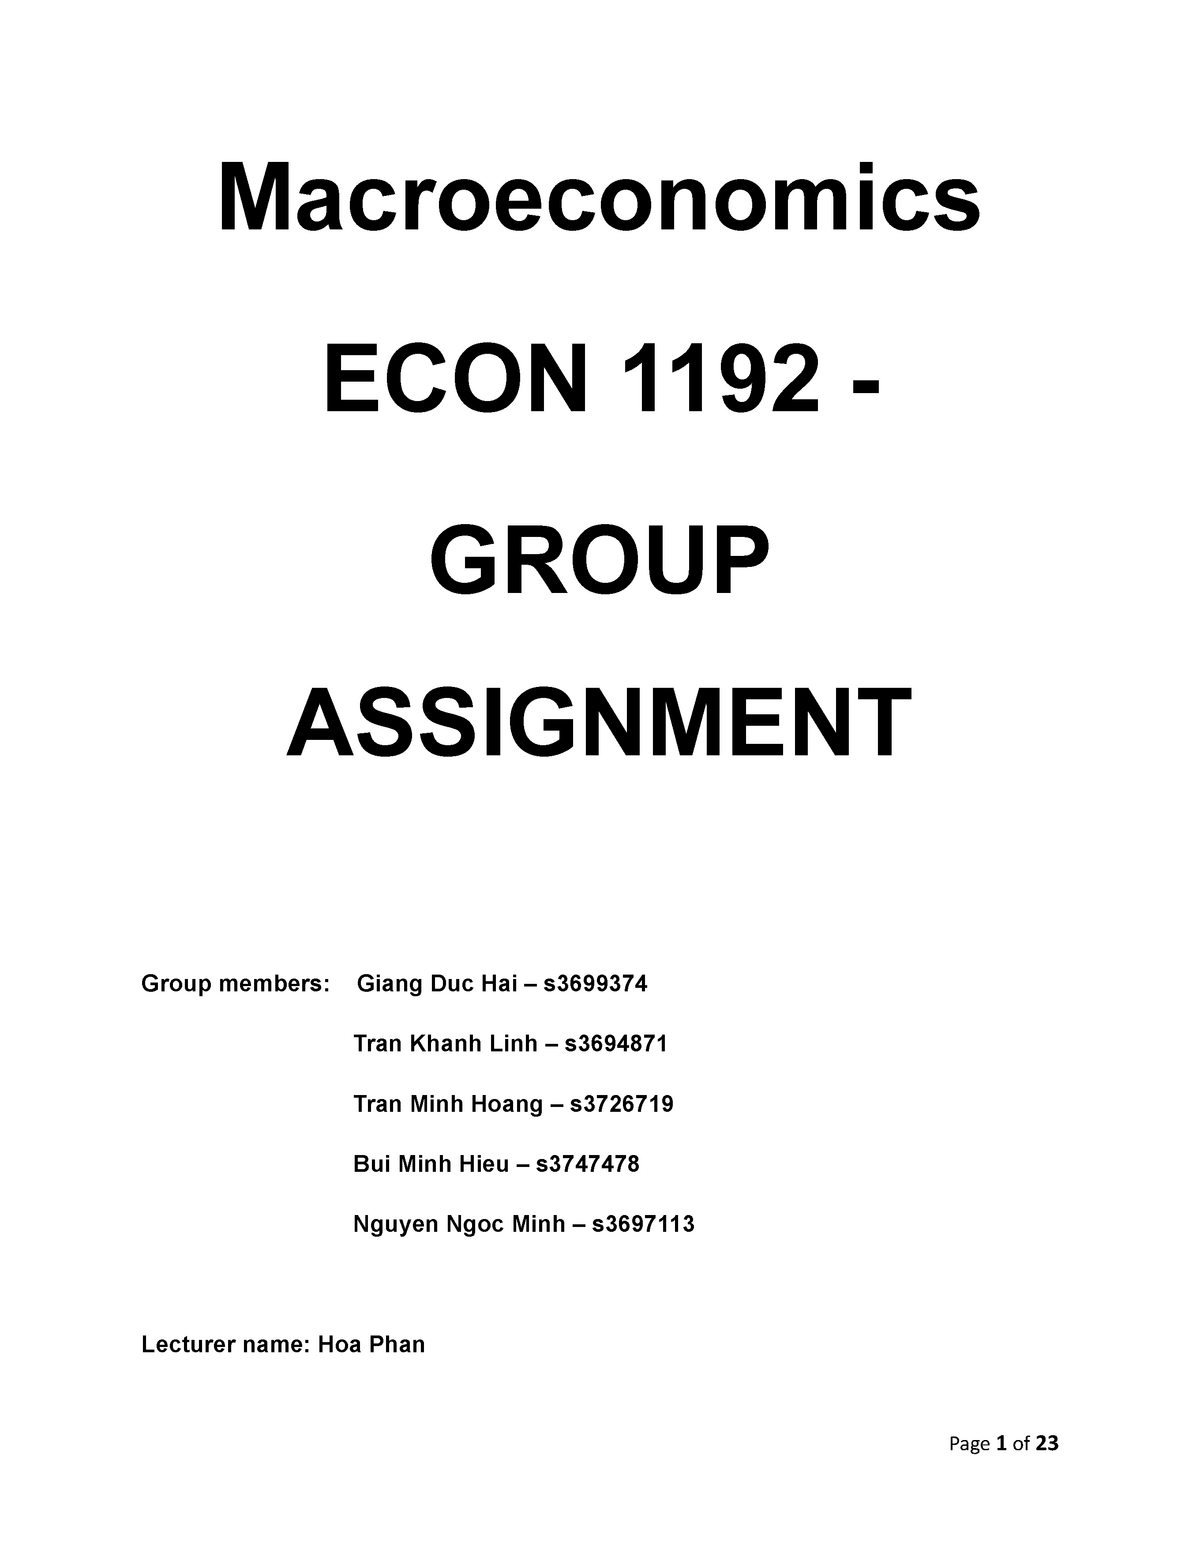 macroeconomics assignment 1